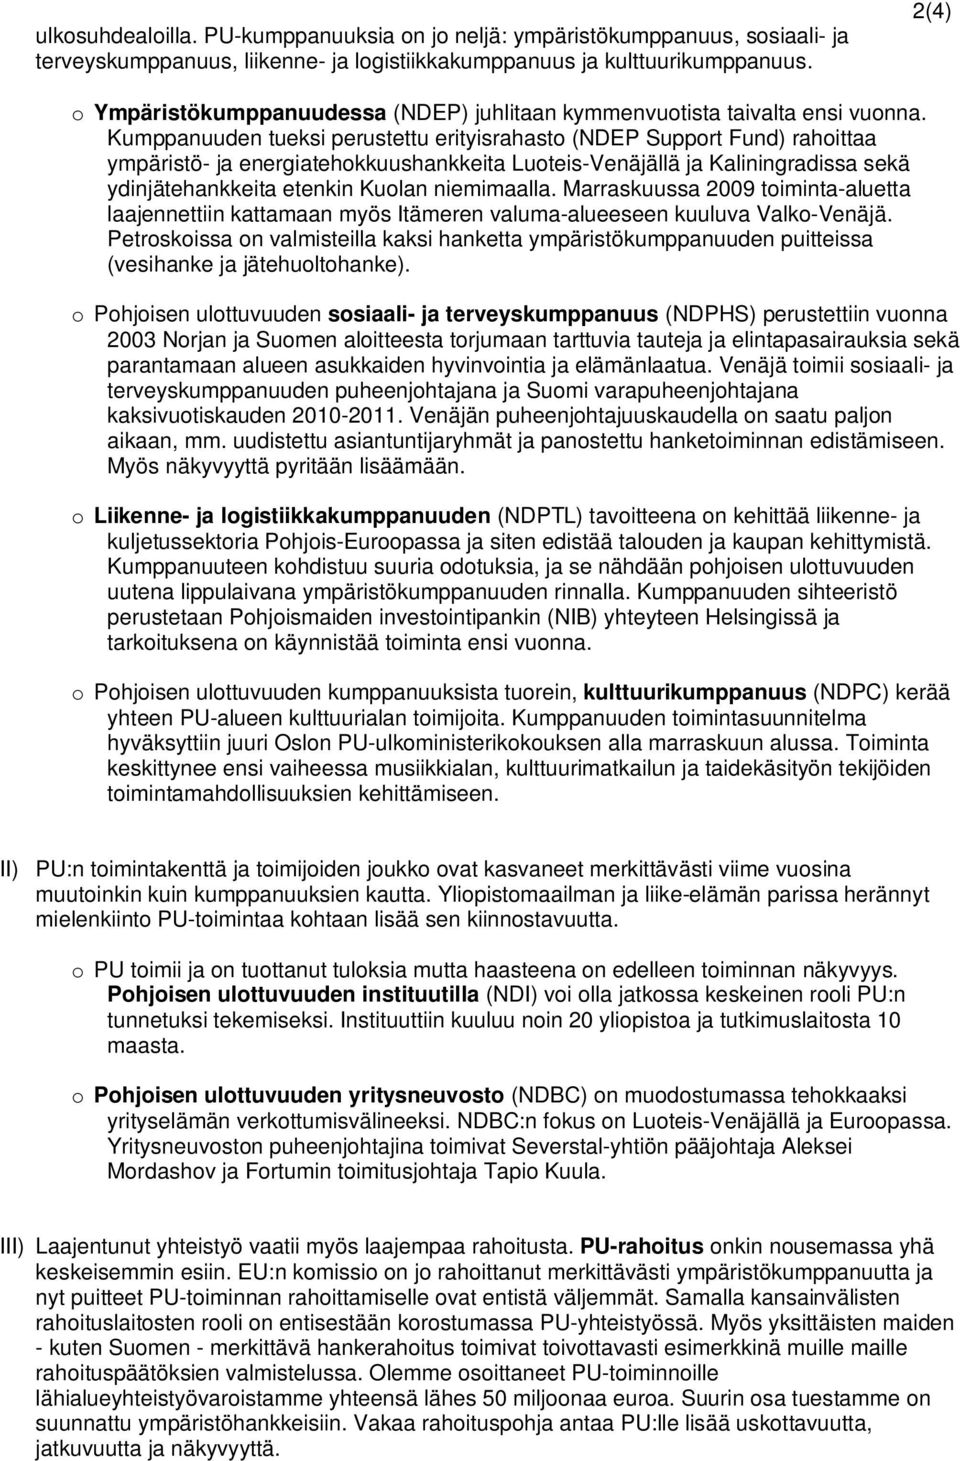 Kumppanuuden tueksi perustettu erityisrahasto (NDEP Support Fund) rahoittaa ympäristö- ja energiatehokkuushankkeita Luoteis-Venäjällä ja Kaliningradissa sekä ydinjätehankkeita etenkin Kuolan